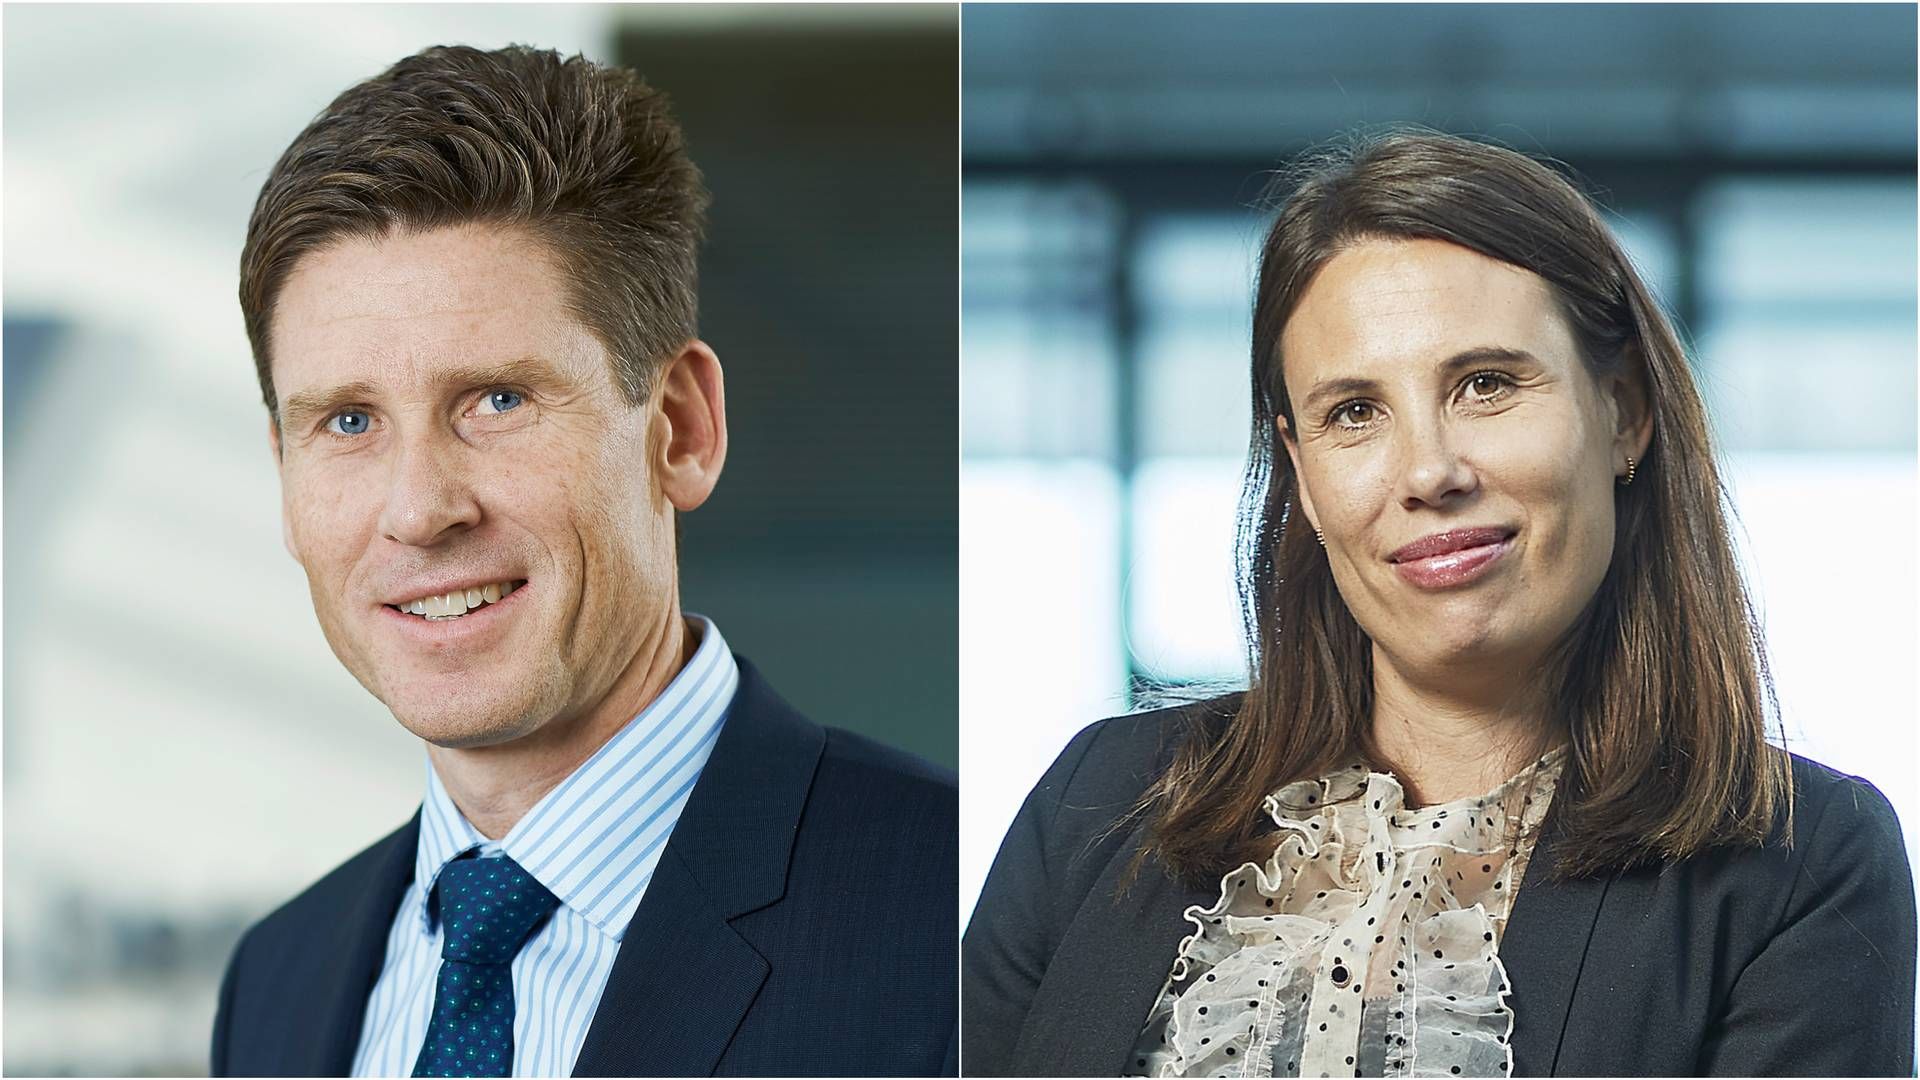 INN I STYRET: Finn Ole Edstrøm og Tone Mari Flatland er nye aksjonærvalgte styremedlemmer i EY. | Foto: EY